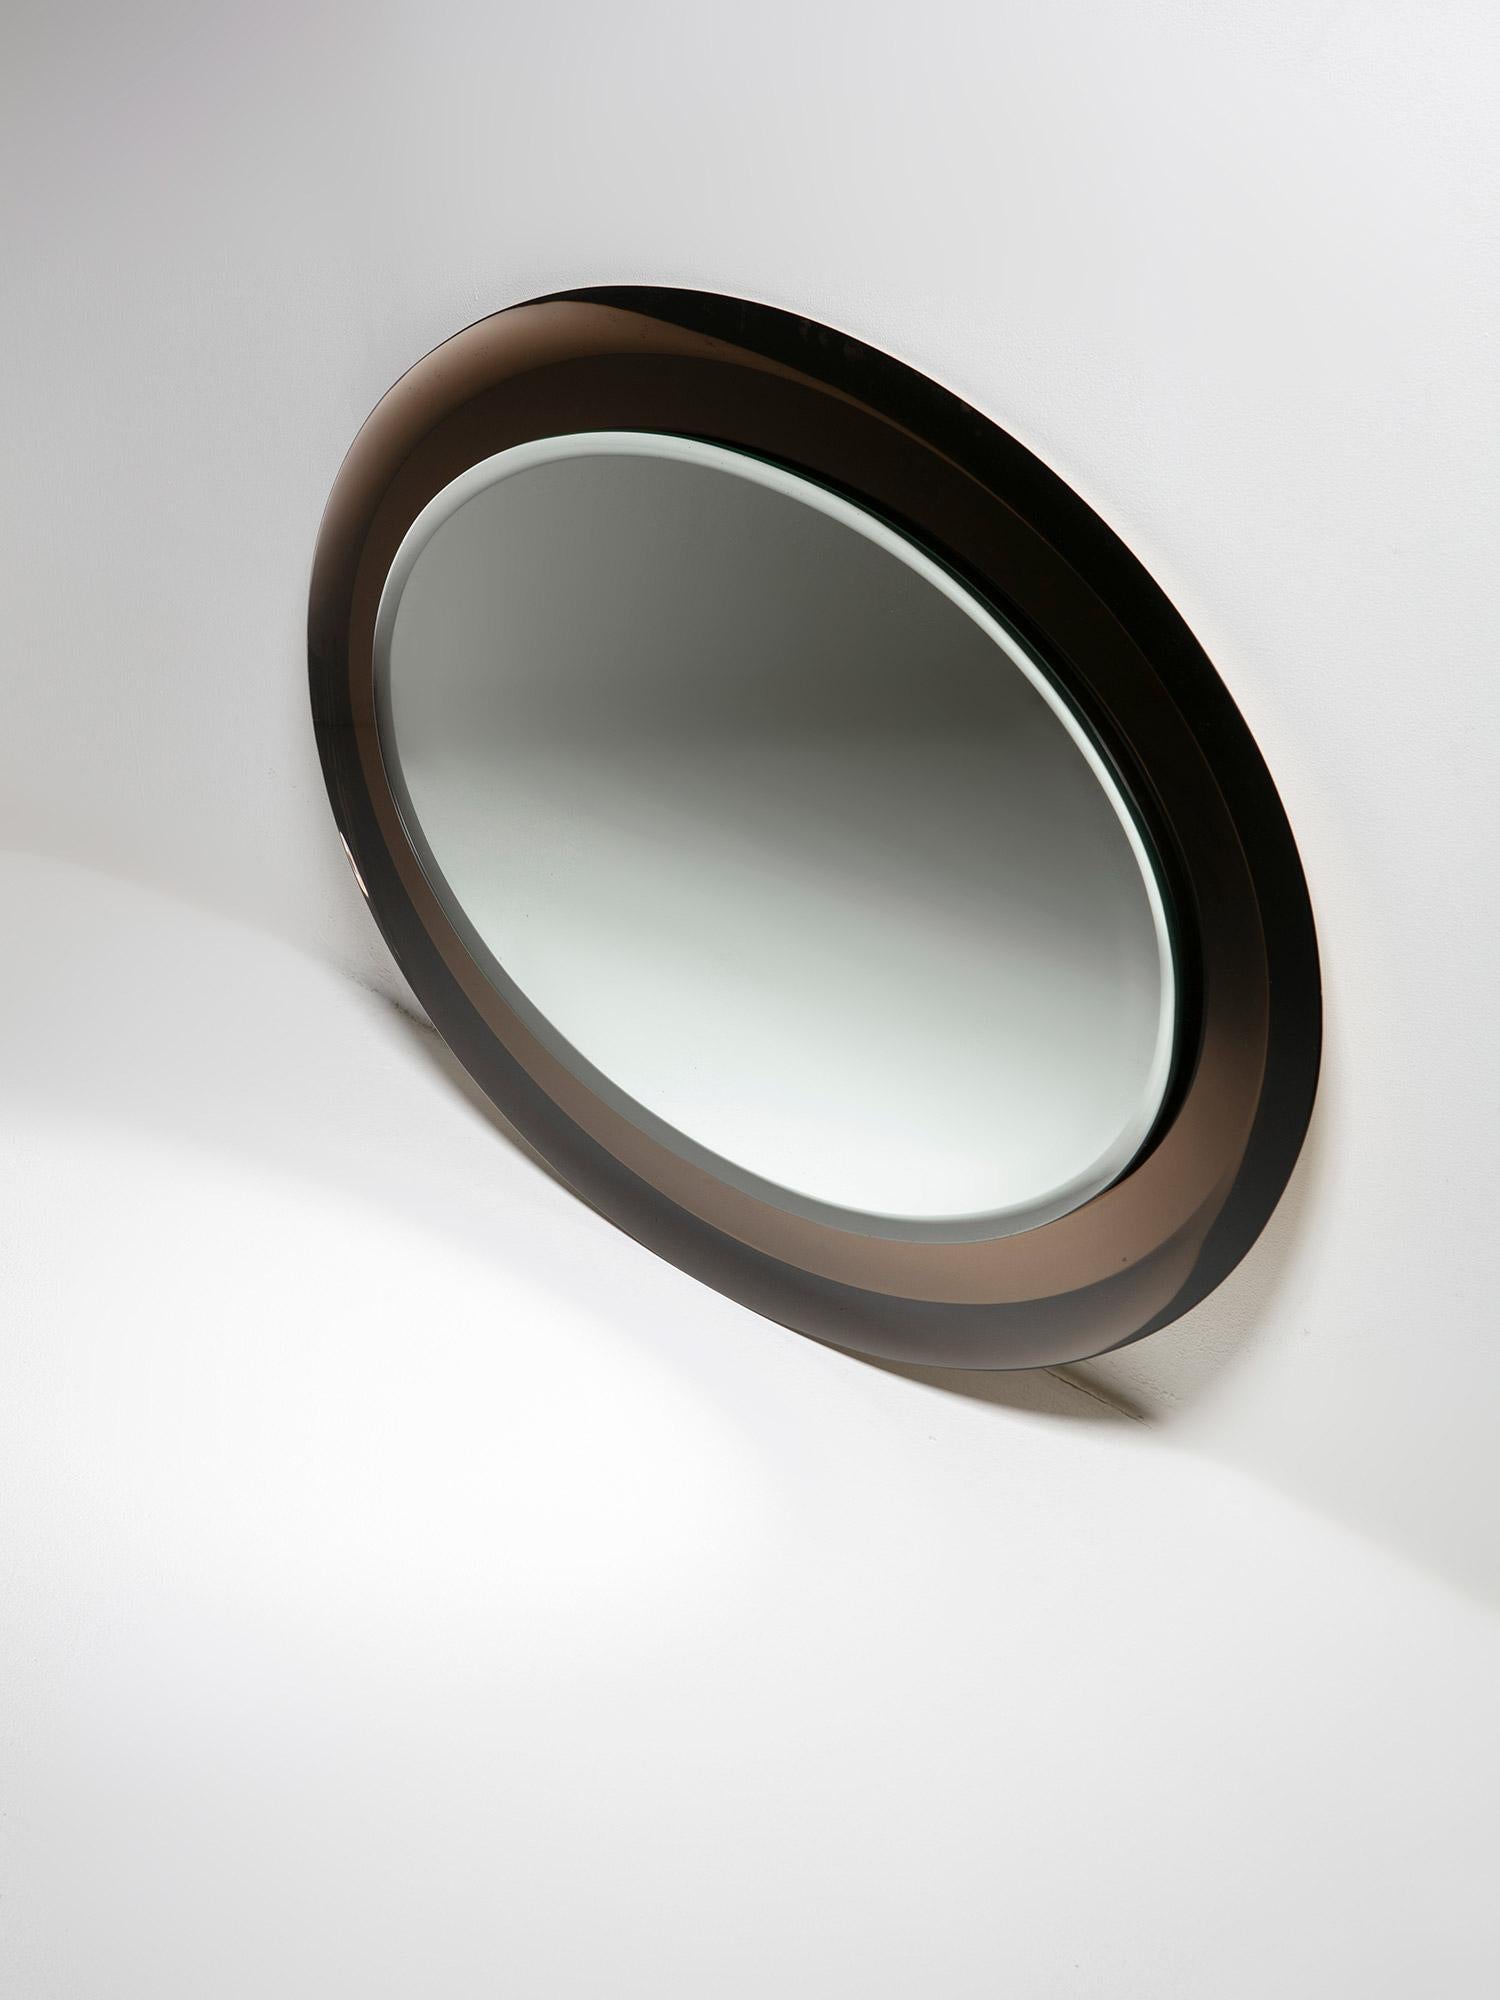 Doppelt abgeschrägter ovaler Spiegel von Metalvetro, Siena.
Frischer, verblassender brauner Rahmen, der das zentrale Stück trägt.
Original Papieretikett auf der Rückseite